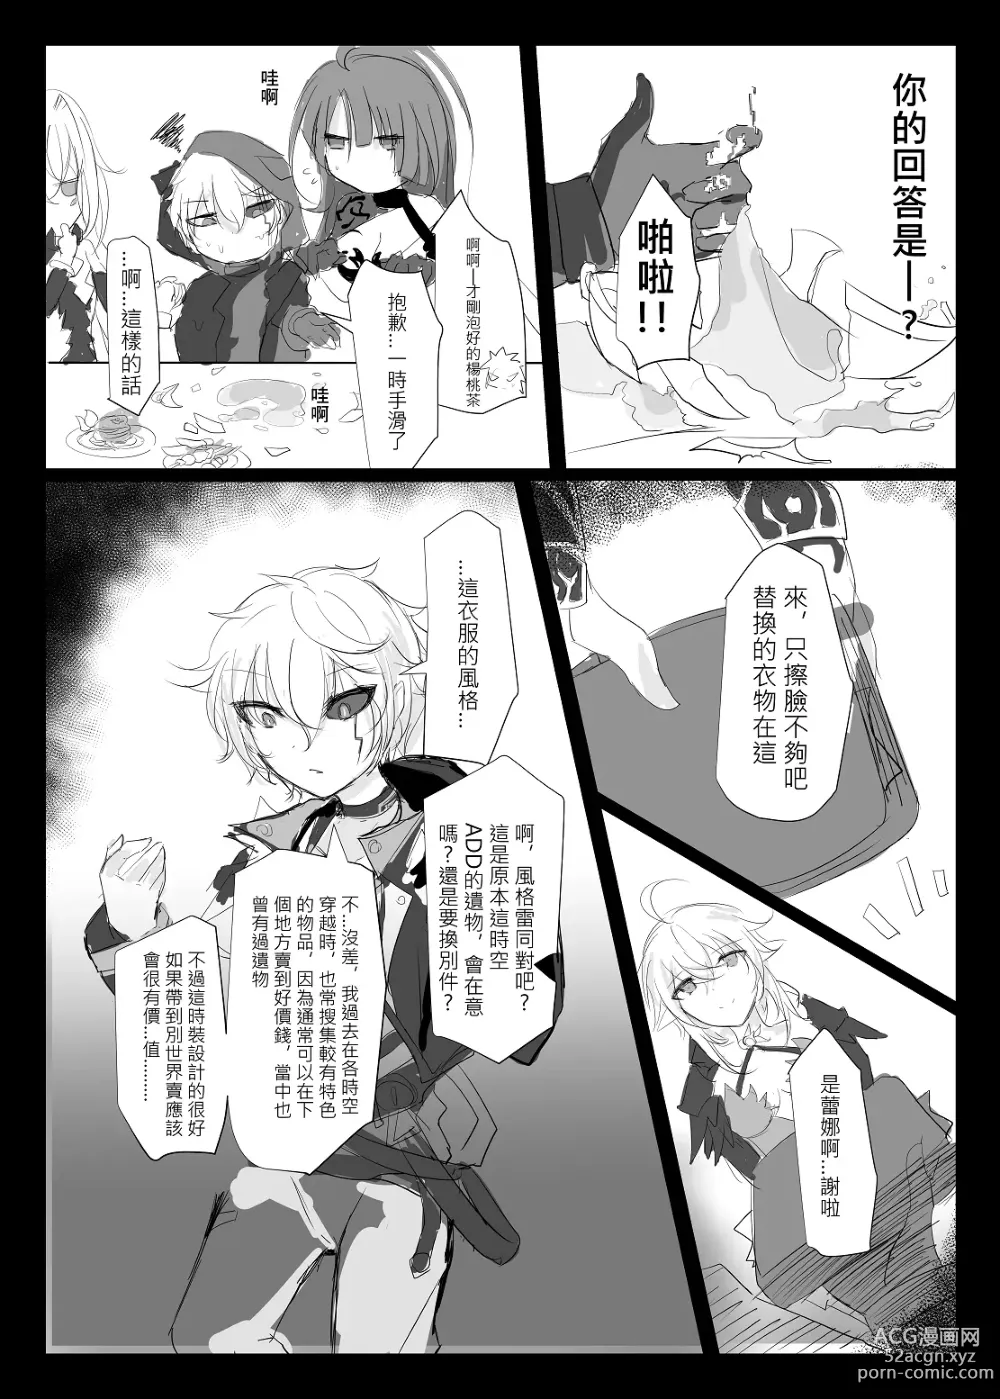 Page 11 of doujinshi ELSWORD:TYPE-V (decensored)